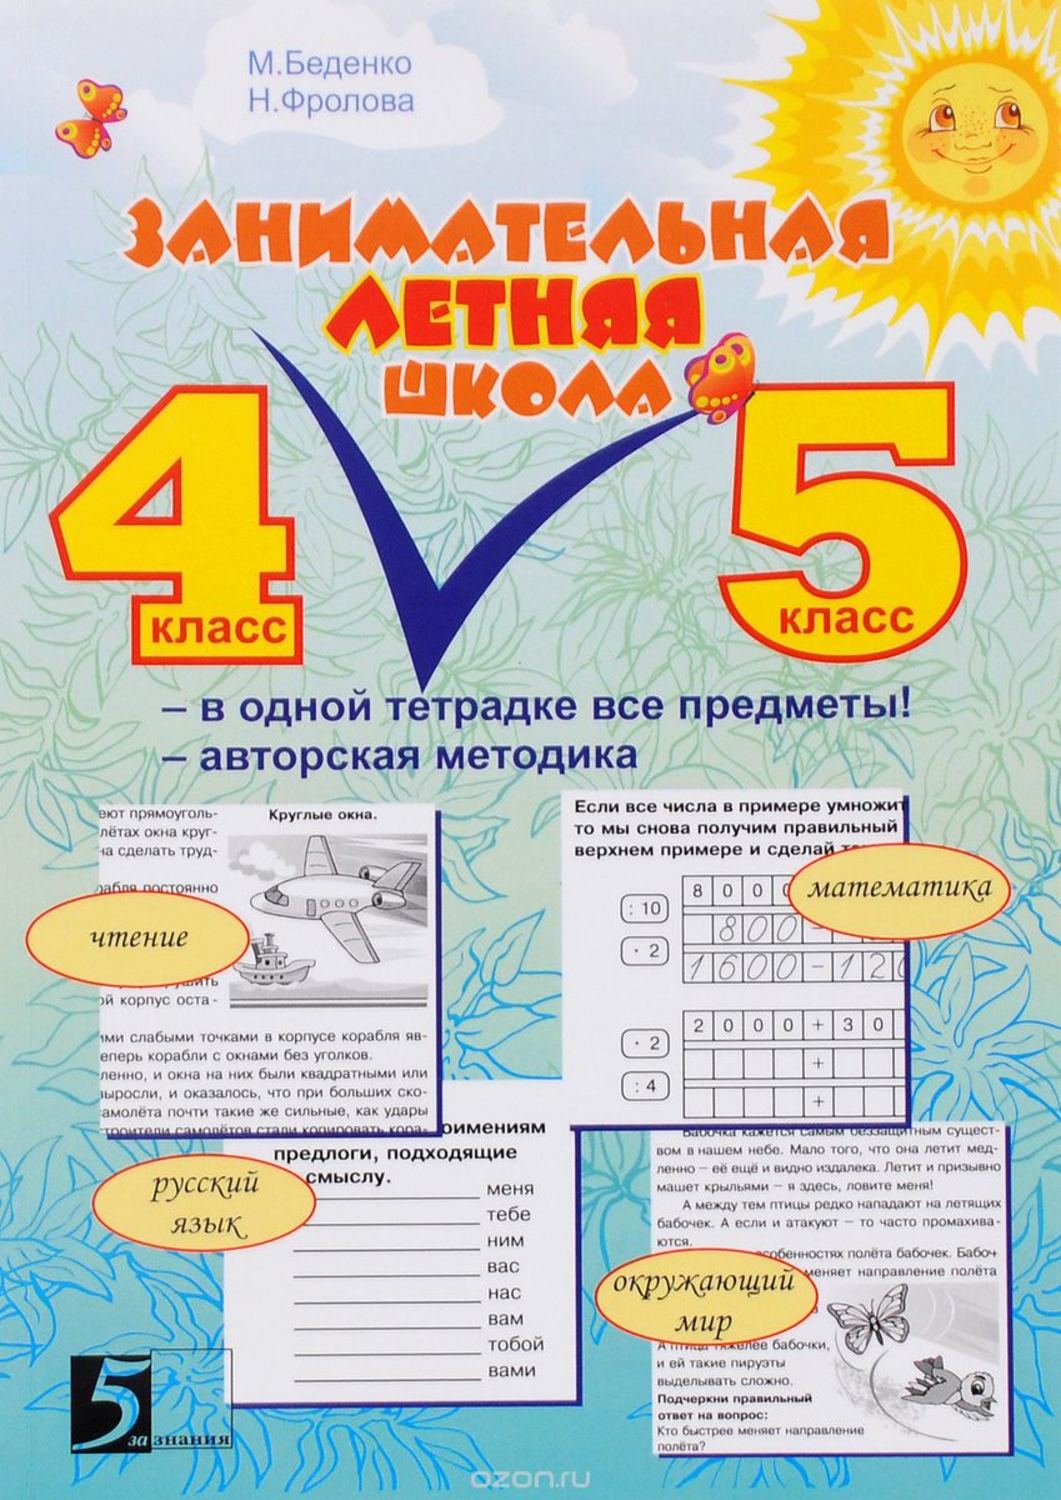 Занимательная летняя школа 4-5 класс М.Беденко Все предметы в одной тетради "5 за знания"